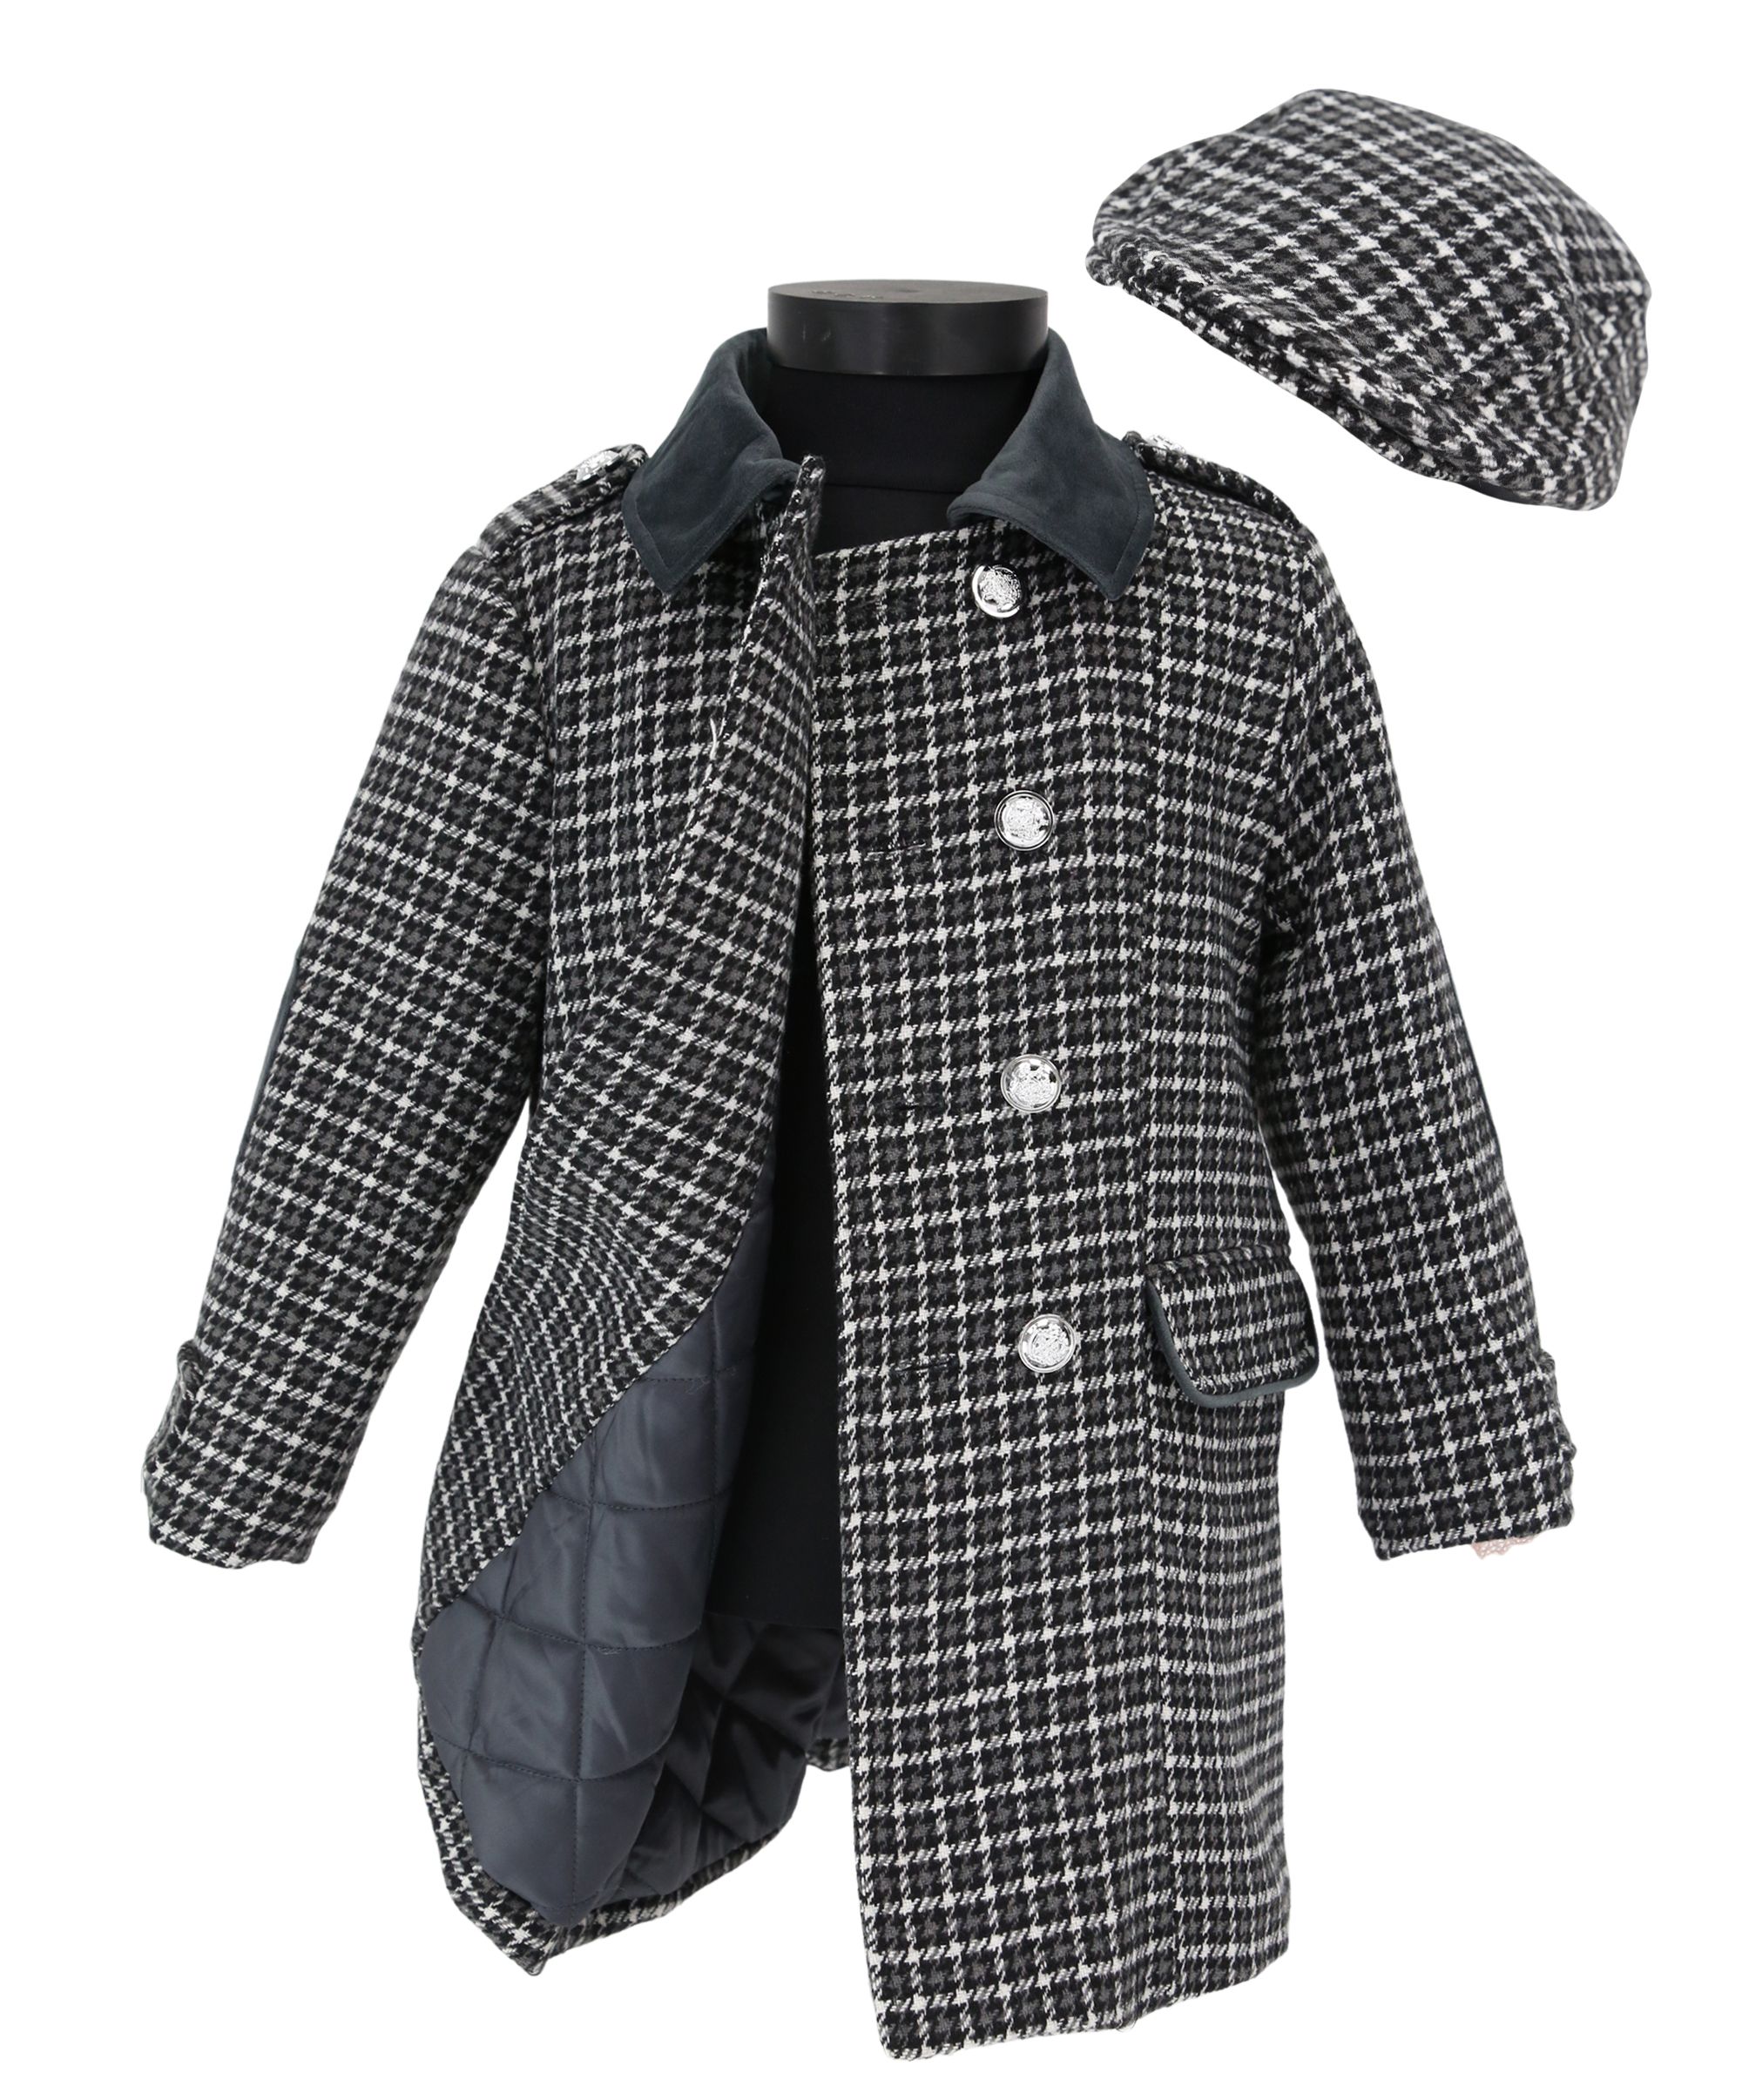 Zweiteiliger Erbsenmantel aus Tweed mit Hahnentrittmuster für Jungen und passender Mütze – perfekt für den Winter. - Grey